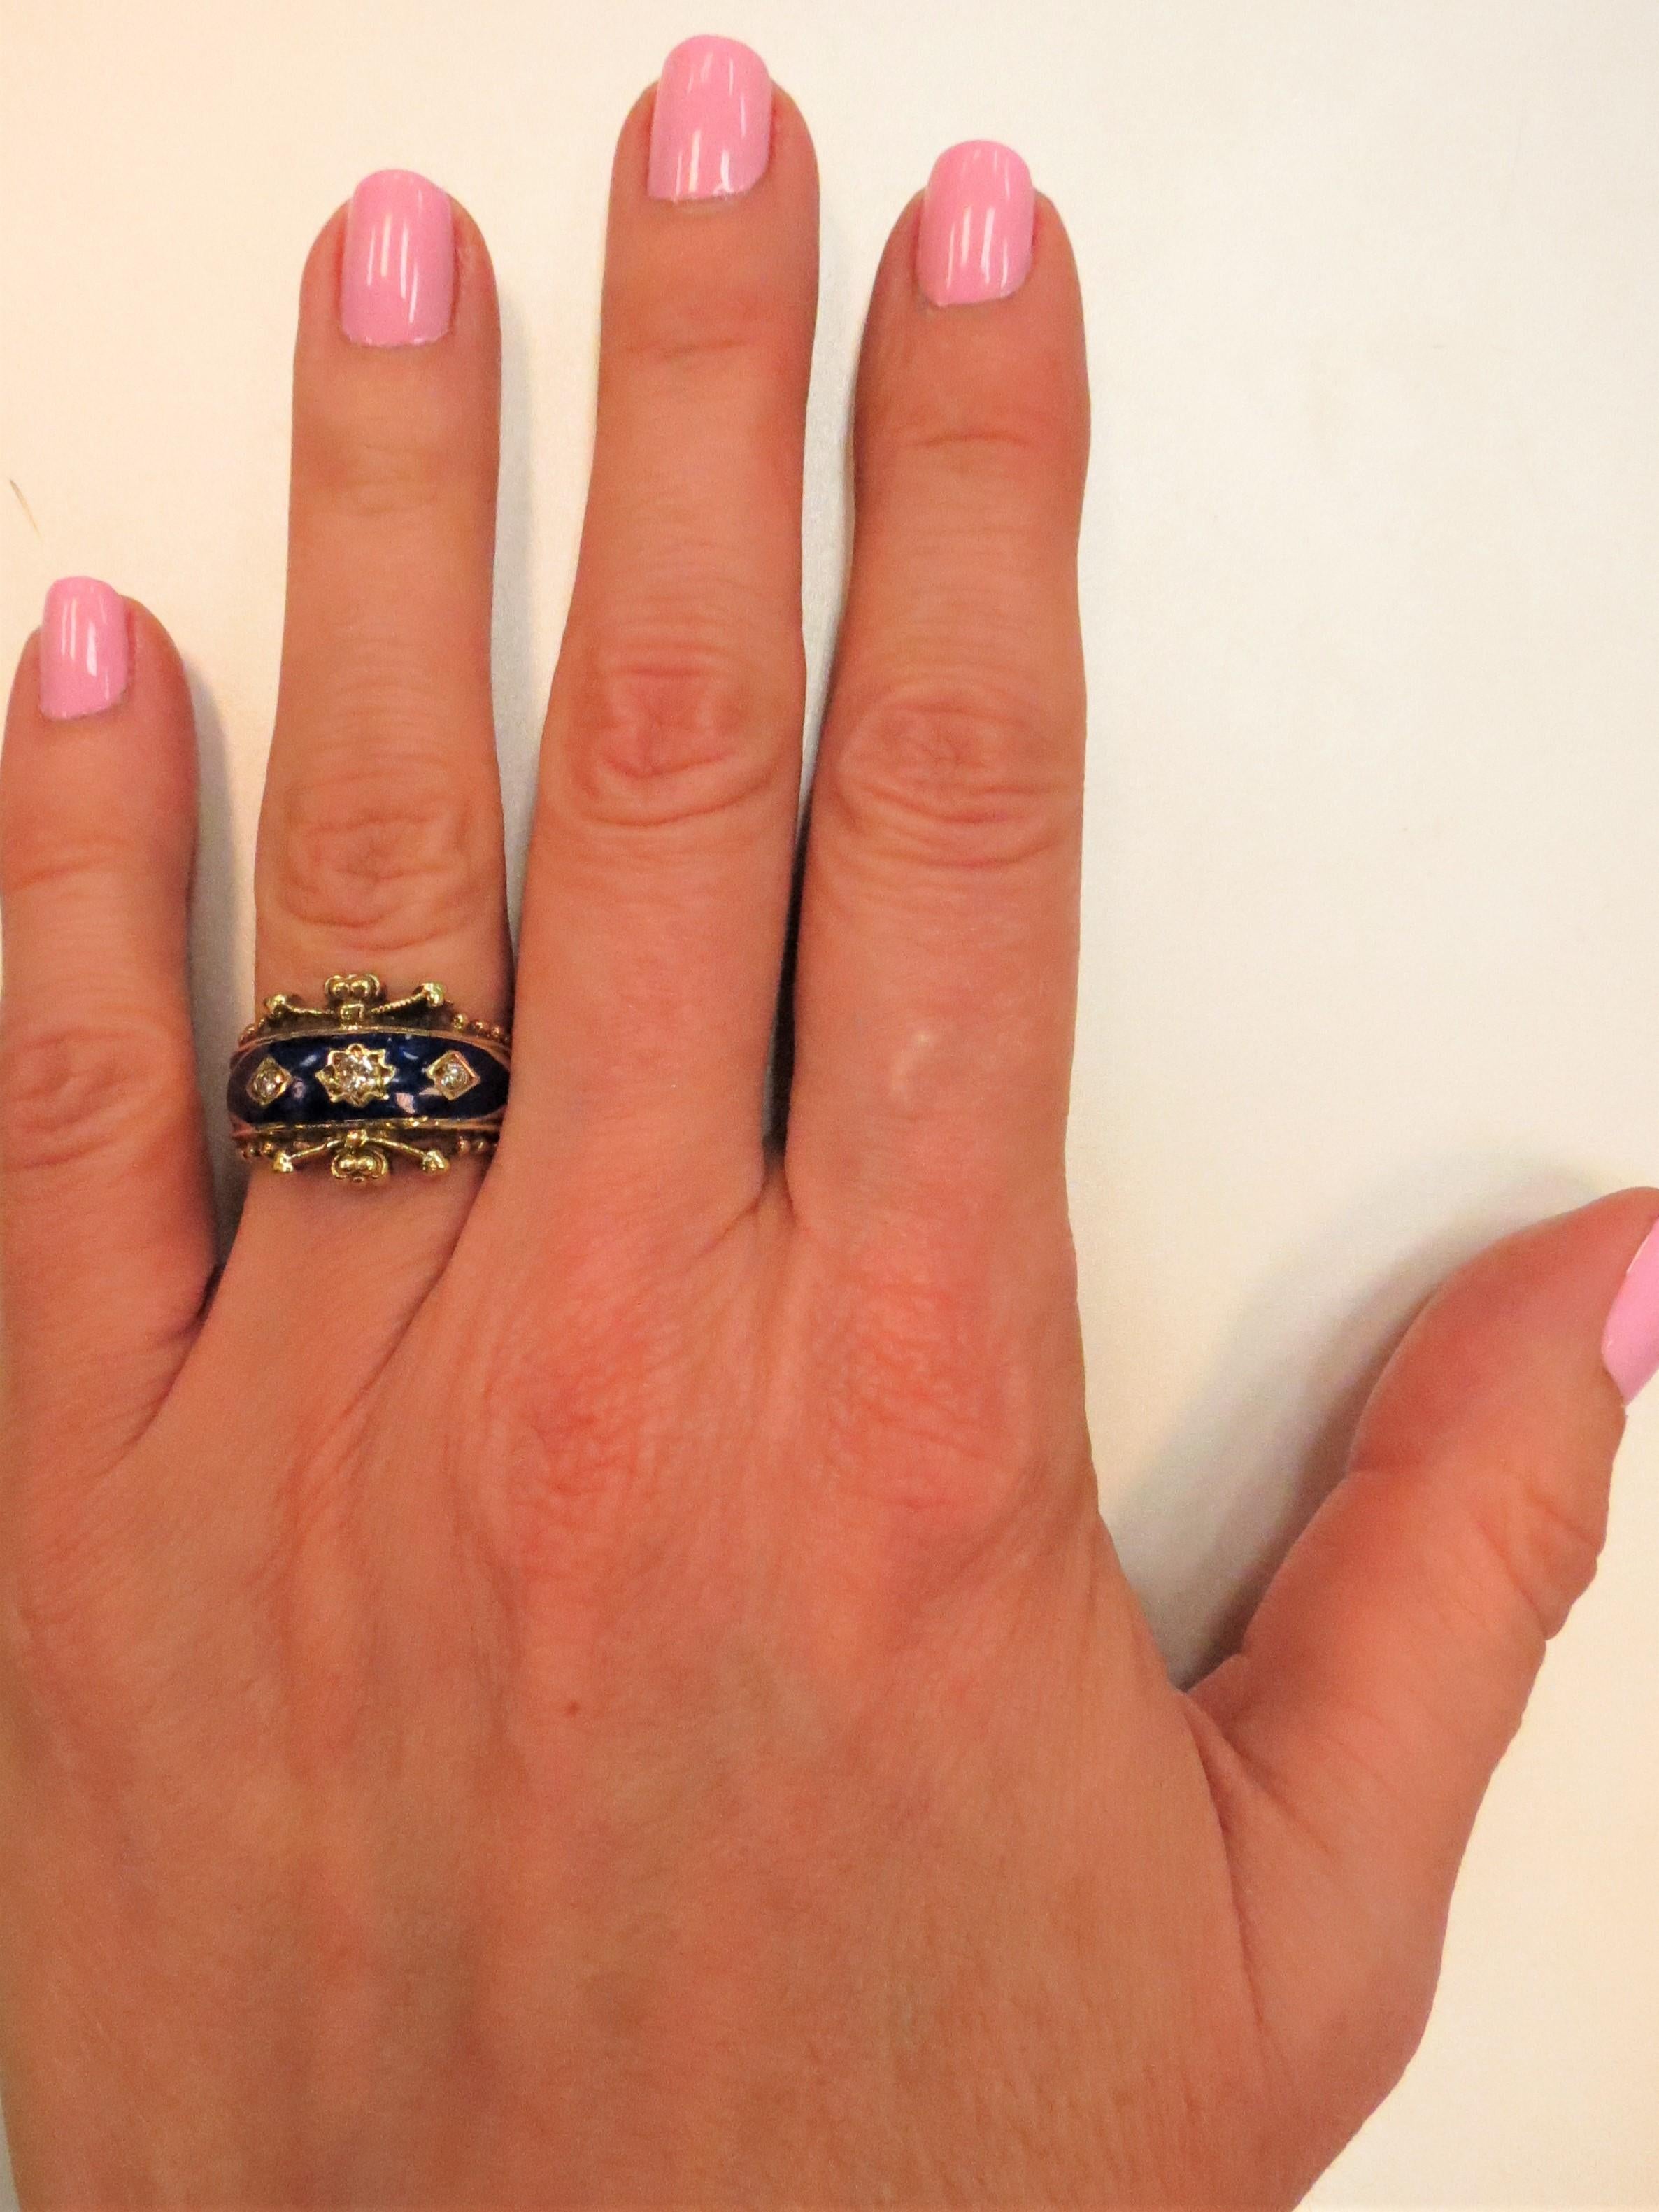 ring aus 14 Karat Gelbgold, blau emailliert, mit 3 runden Diamanten im Vollschliff mit einem Gewicht von 0,14 ct, Farbe H-I, Reinheit VS-SI1, in Zacken gesetzt
Fingergröße 6, kann angepasst werden
Letzter Verkauf $850